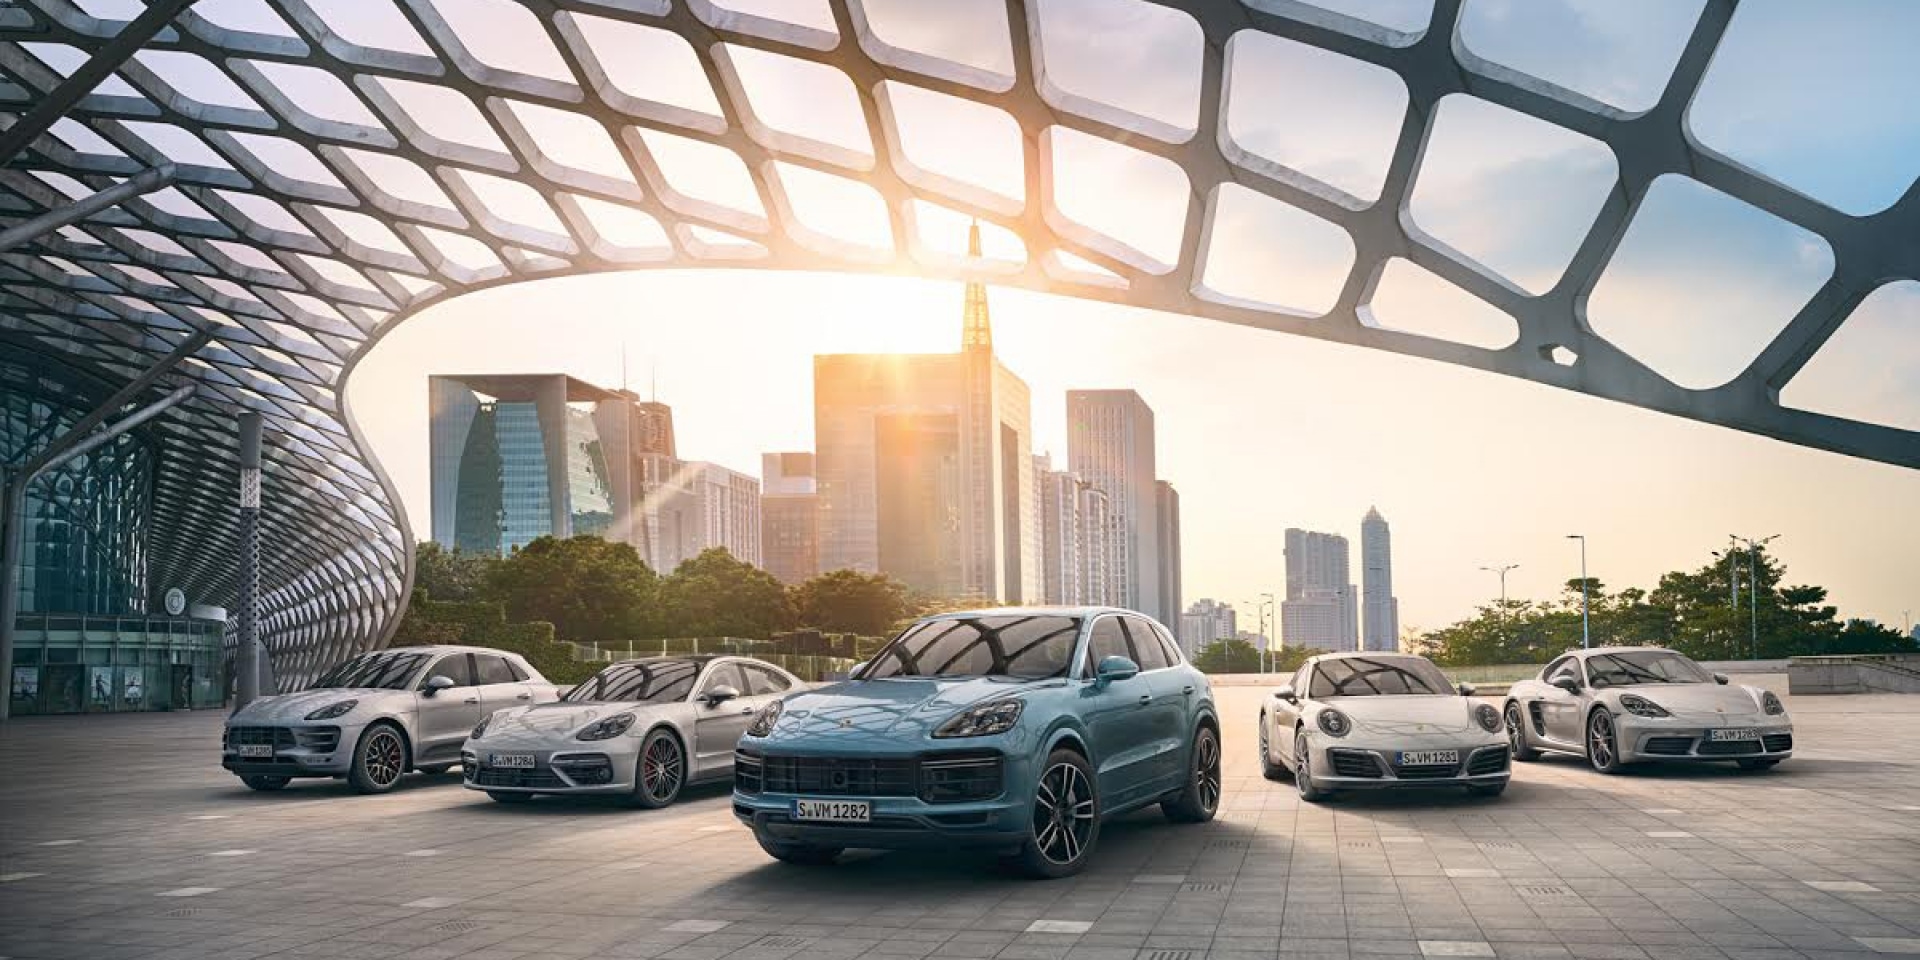 官方新聞稿。2018年Porsche銷售捷報出爐  台灣市場交出3,396輛的亮眼成績單